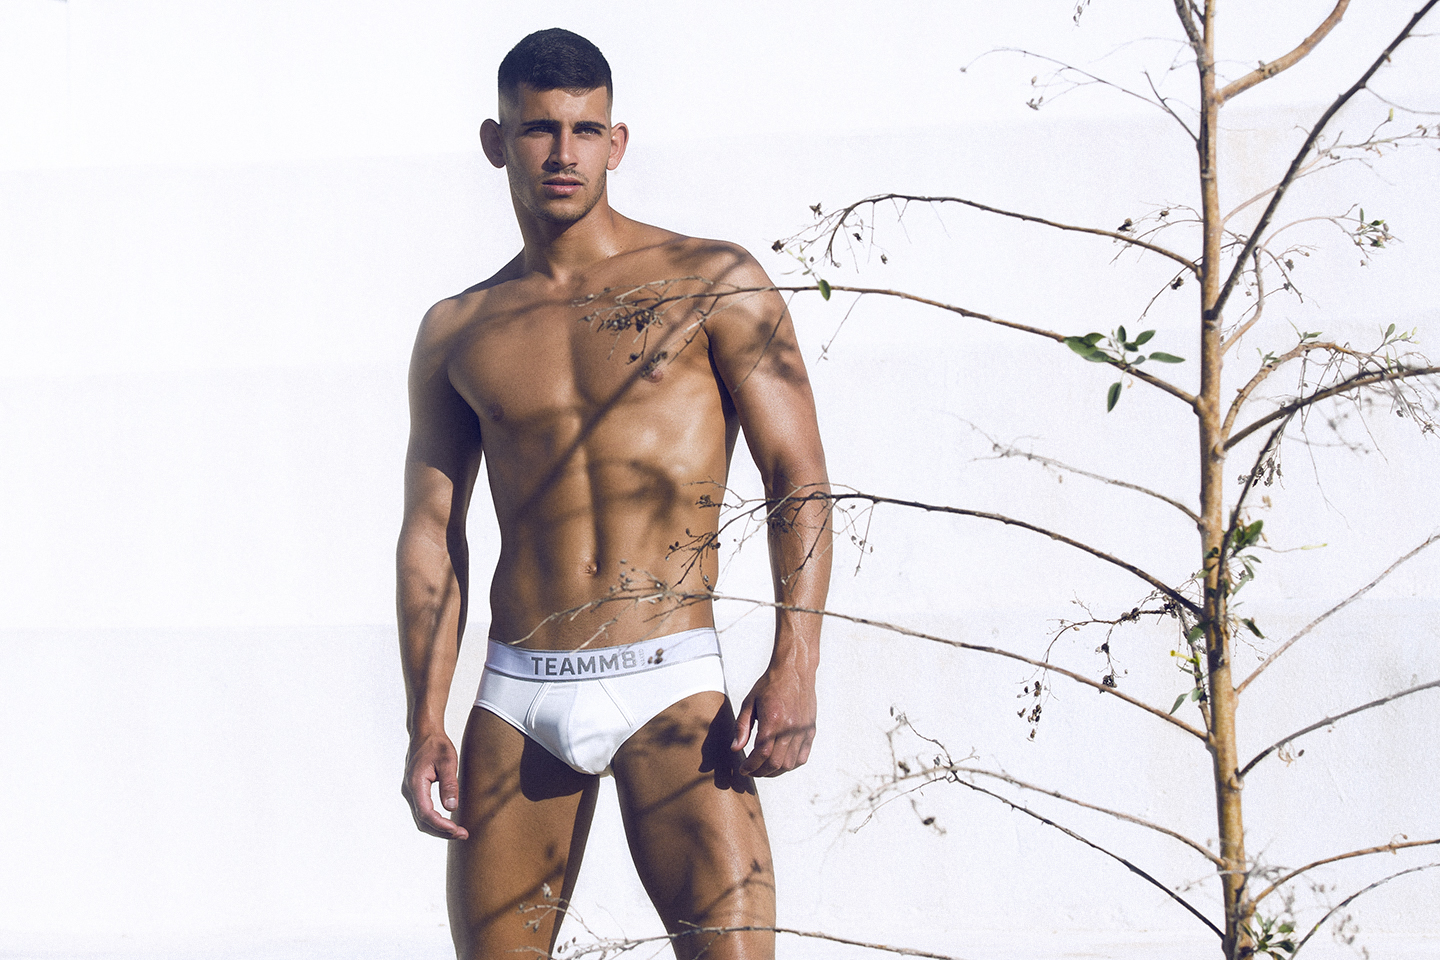 Model Loren by Adrian C. Martin - Teamm8 Naked Underwear campaign - Part On...